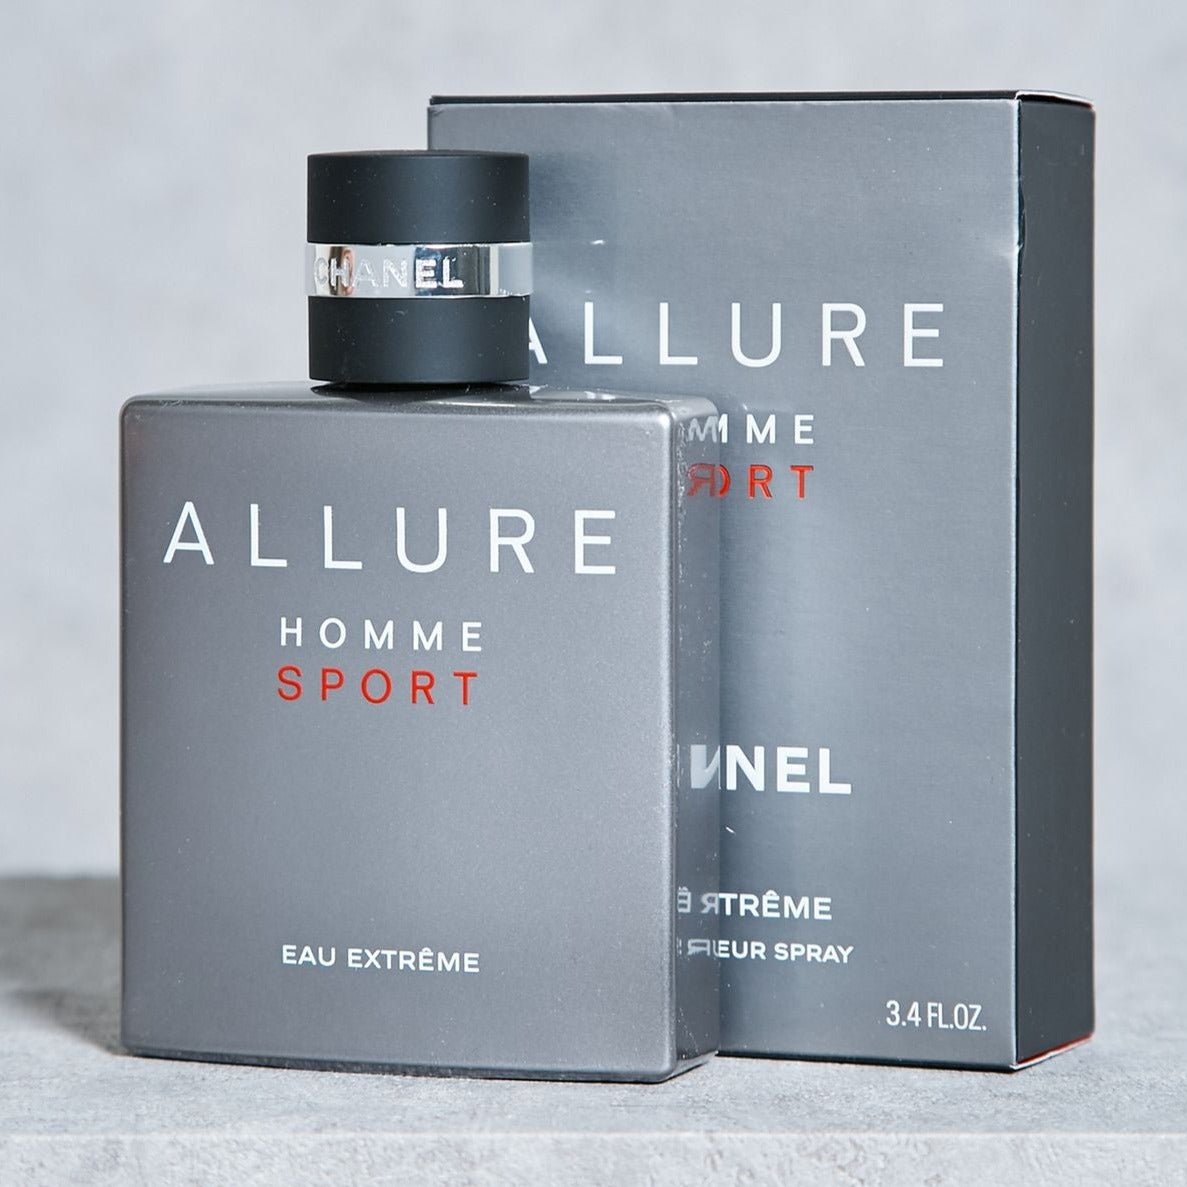 Chanel Allure Homme Sport Eau Extreme | My Perfume Shop Australia